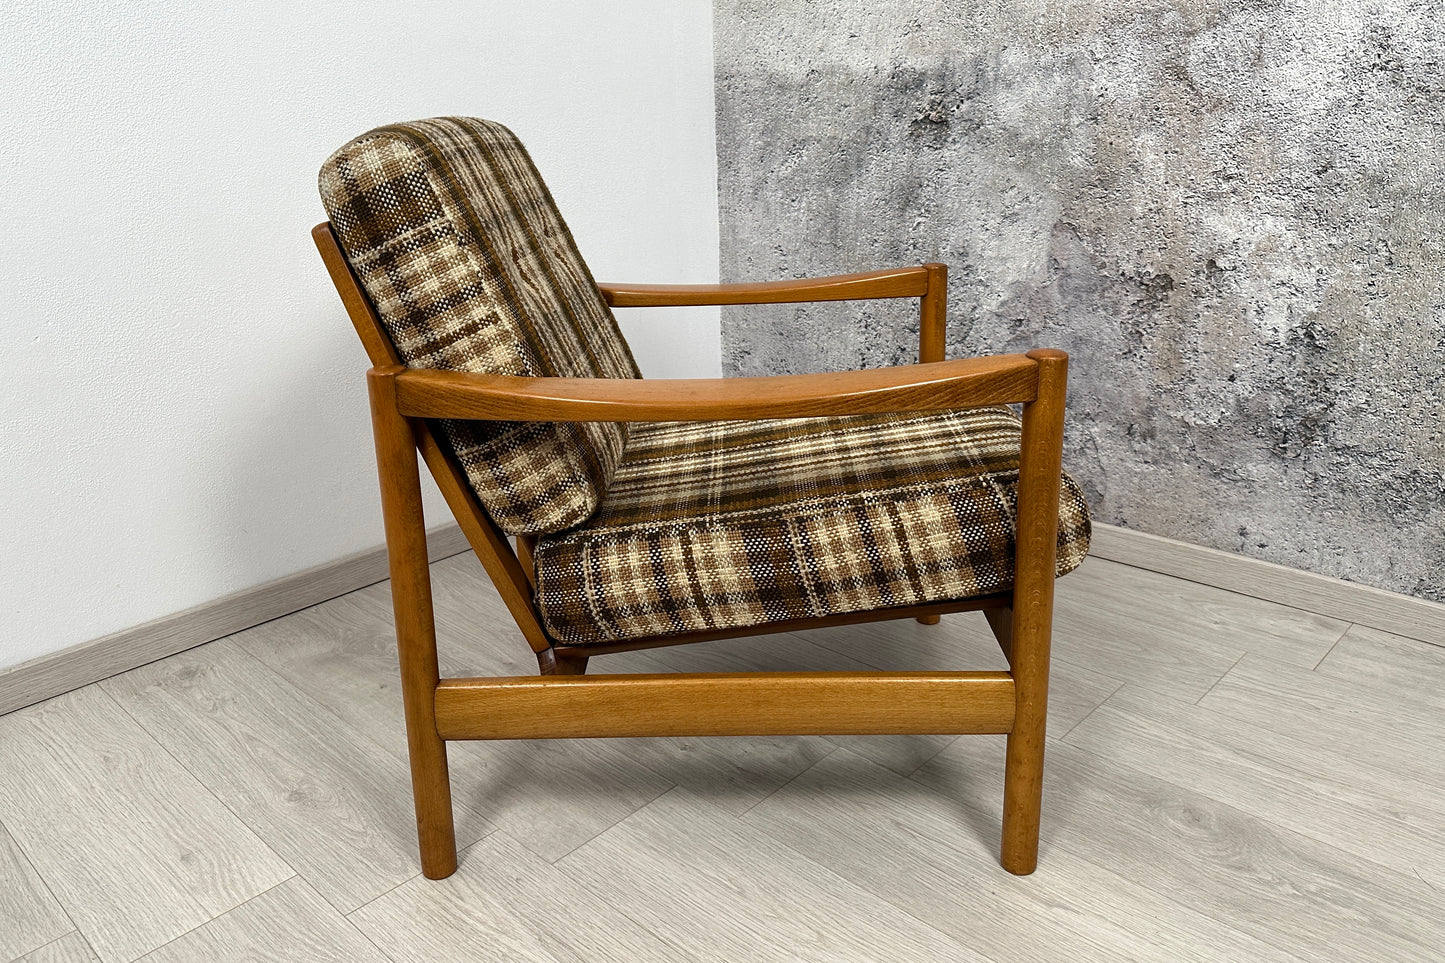 Armlehnensessel / Easy Chair Knoll Antimott, 1960er